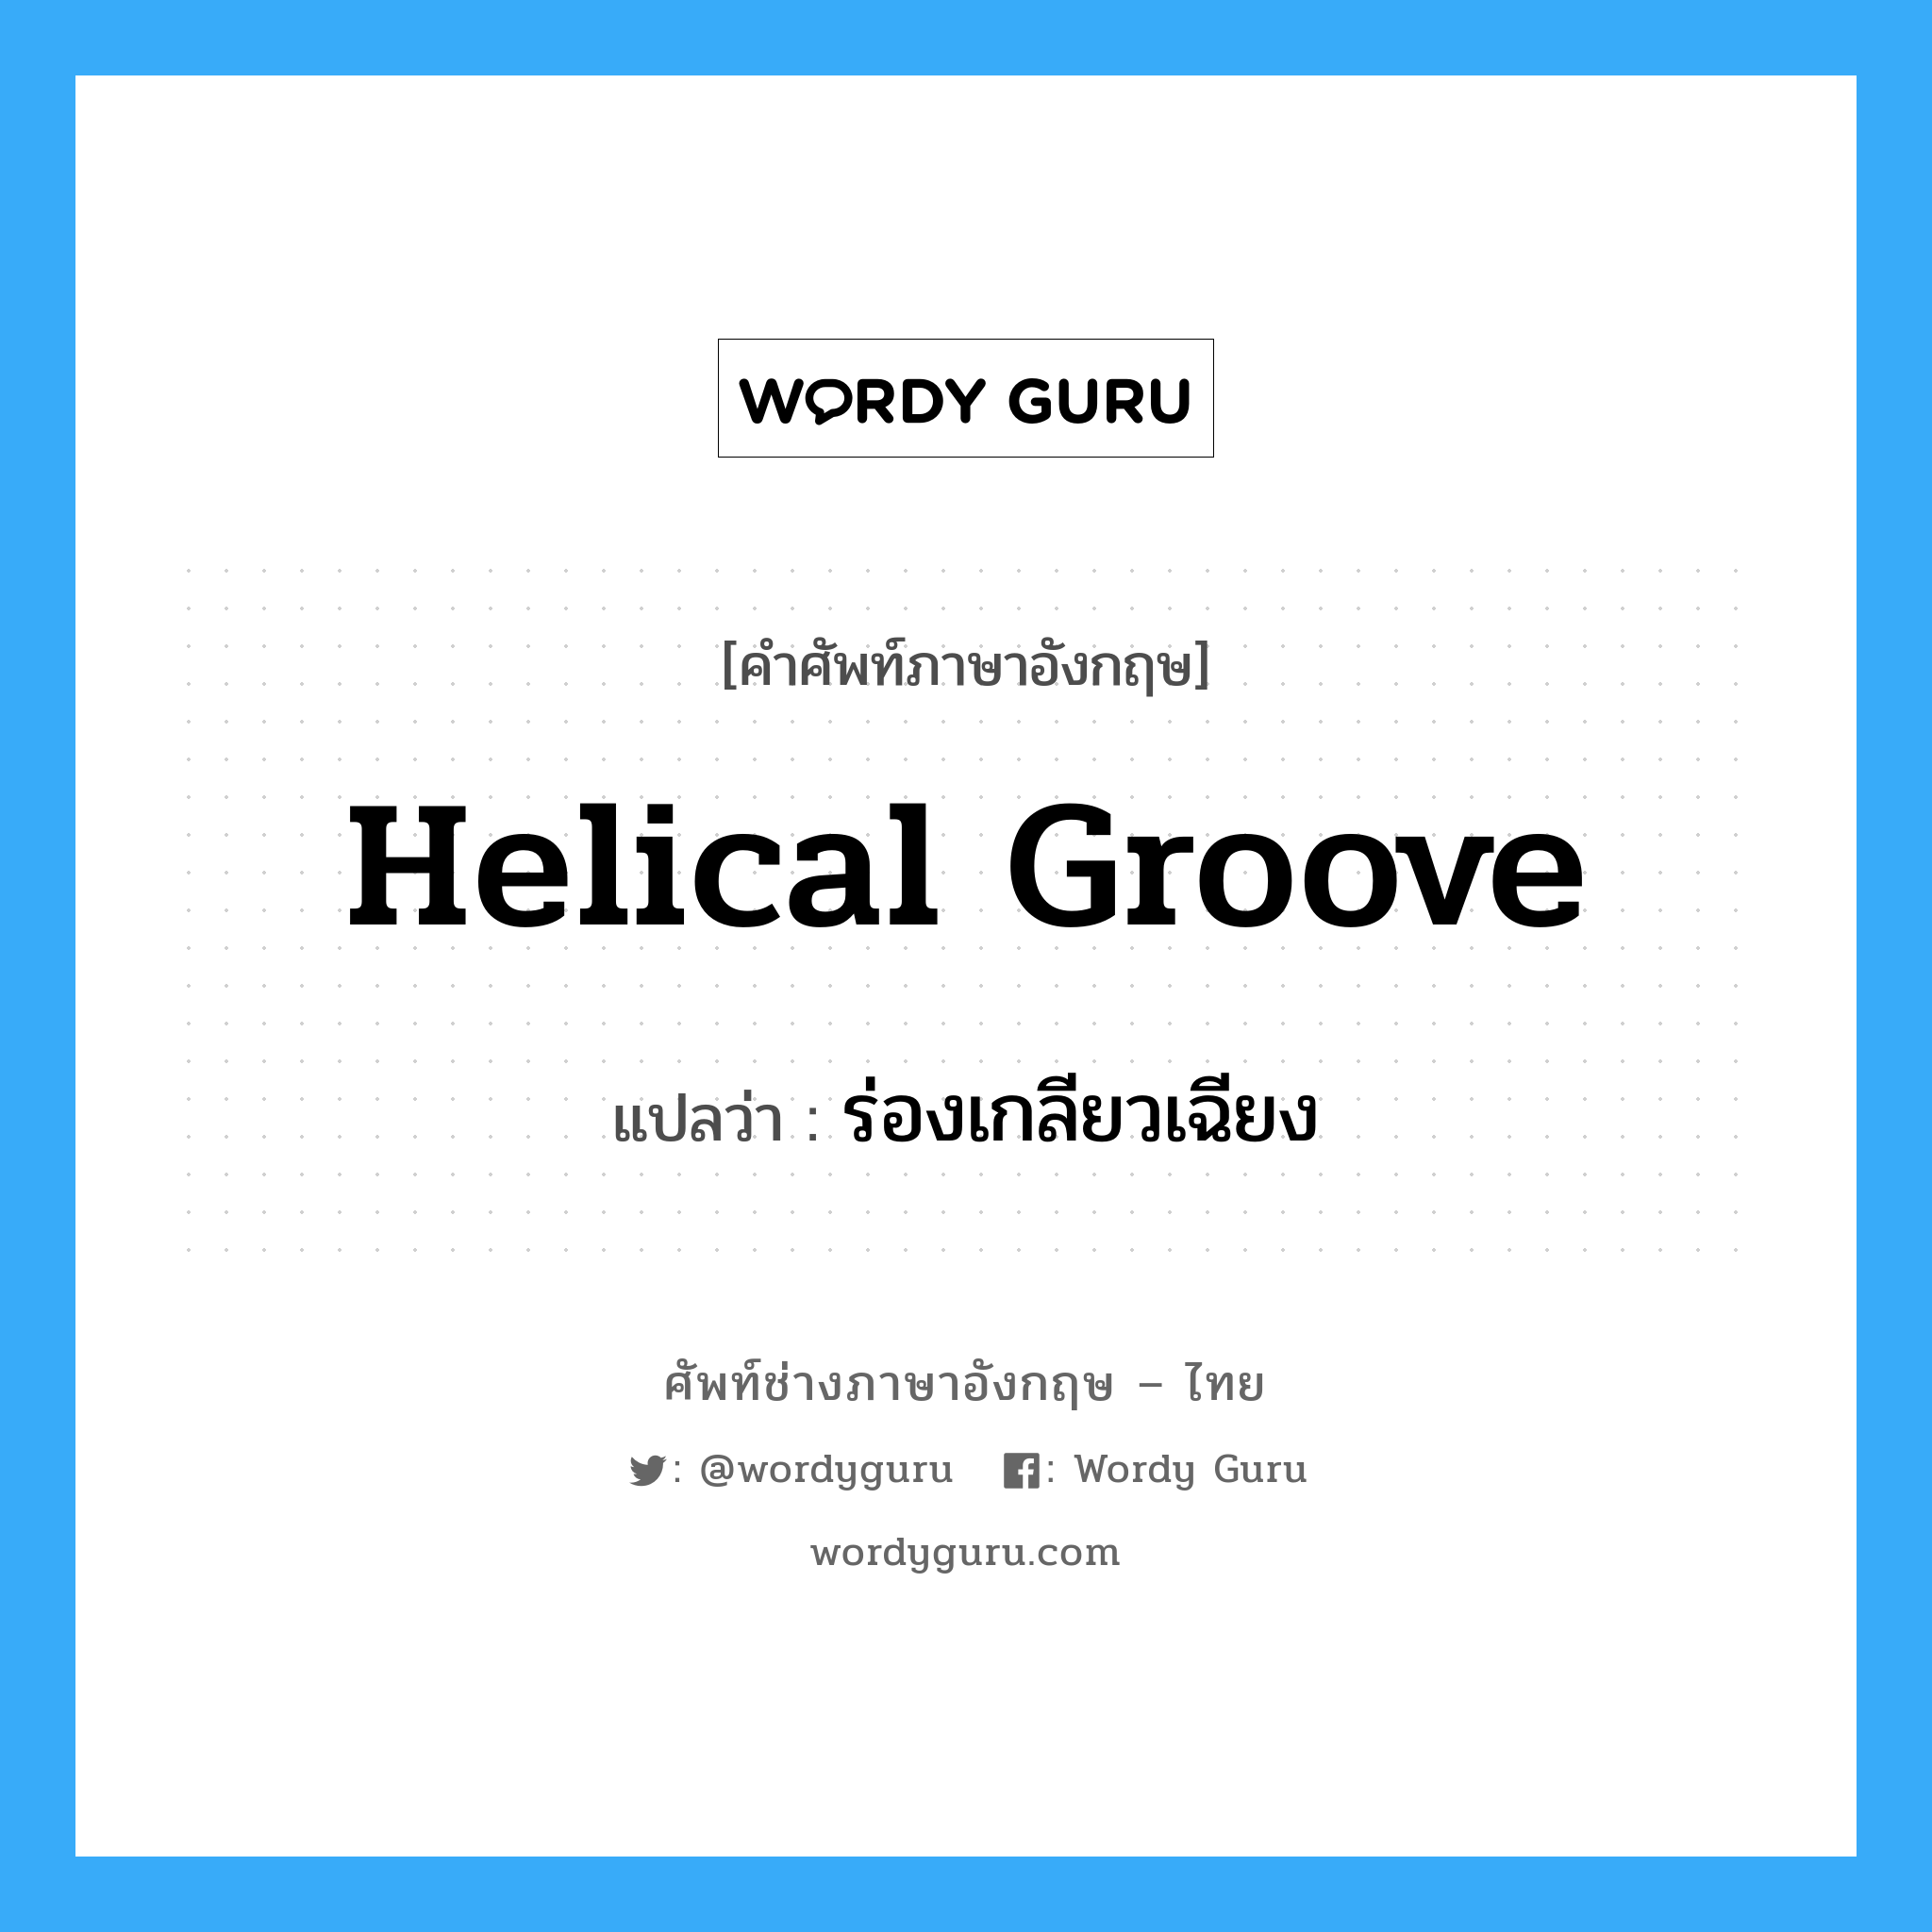 helical groove แปลว่า?, คำศัพท์ช่างภาษาอังกฤษ - ไทย helical groove คำศัพท์ภาษาอังกฤษ helical groove แปลว่า ร่องเกลียวเฉียง